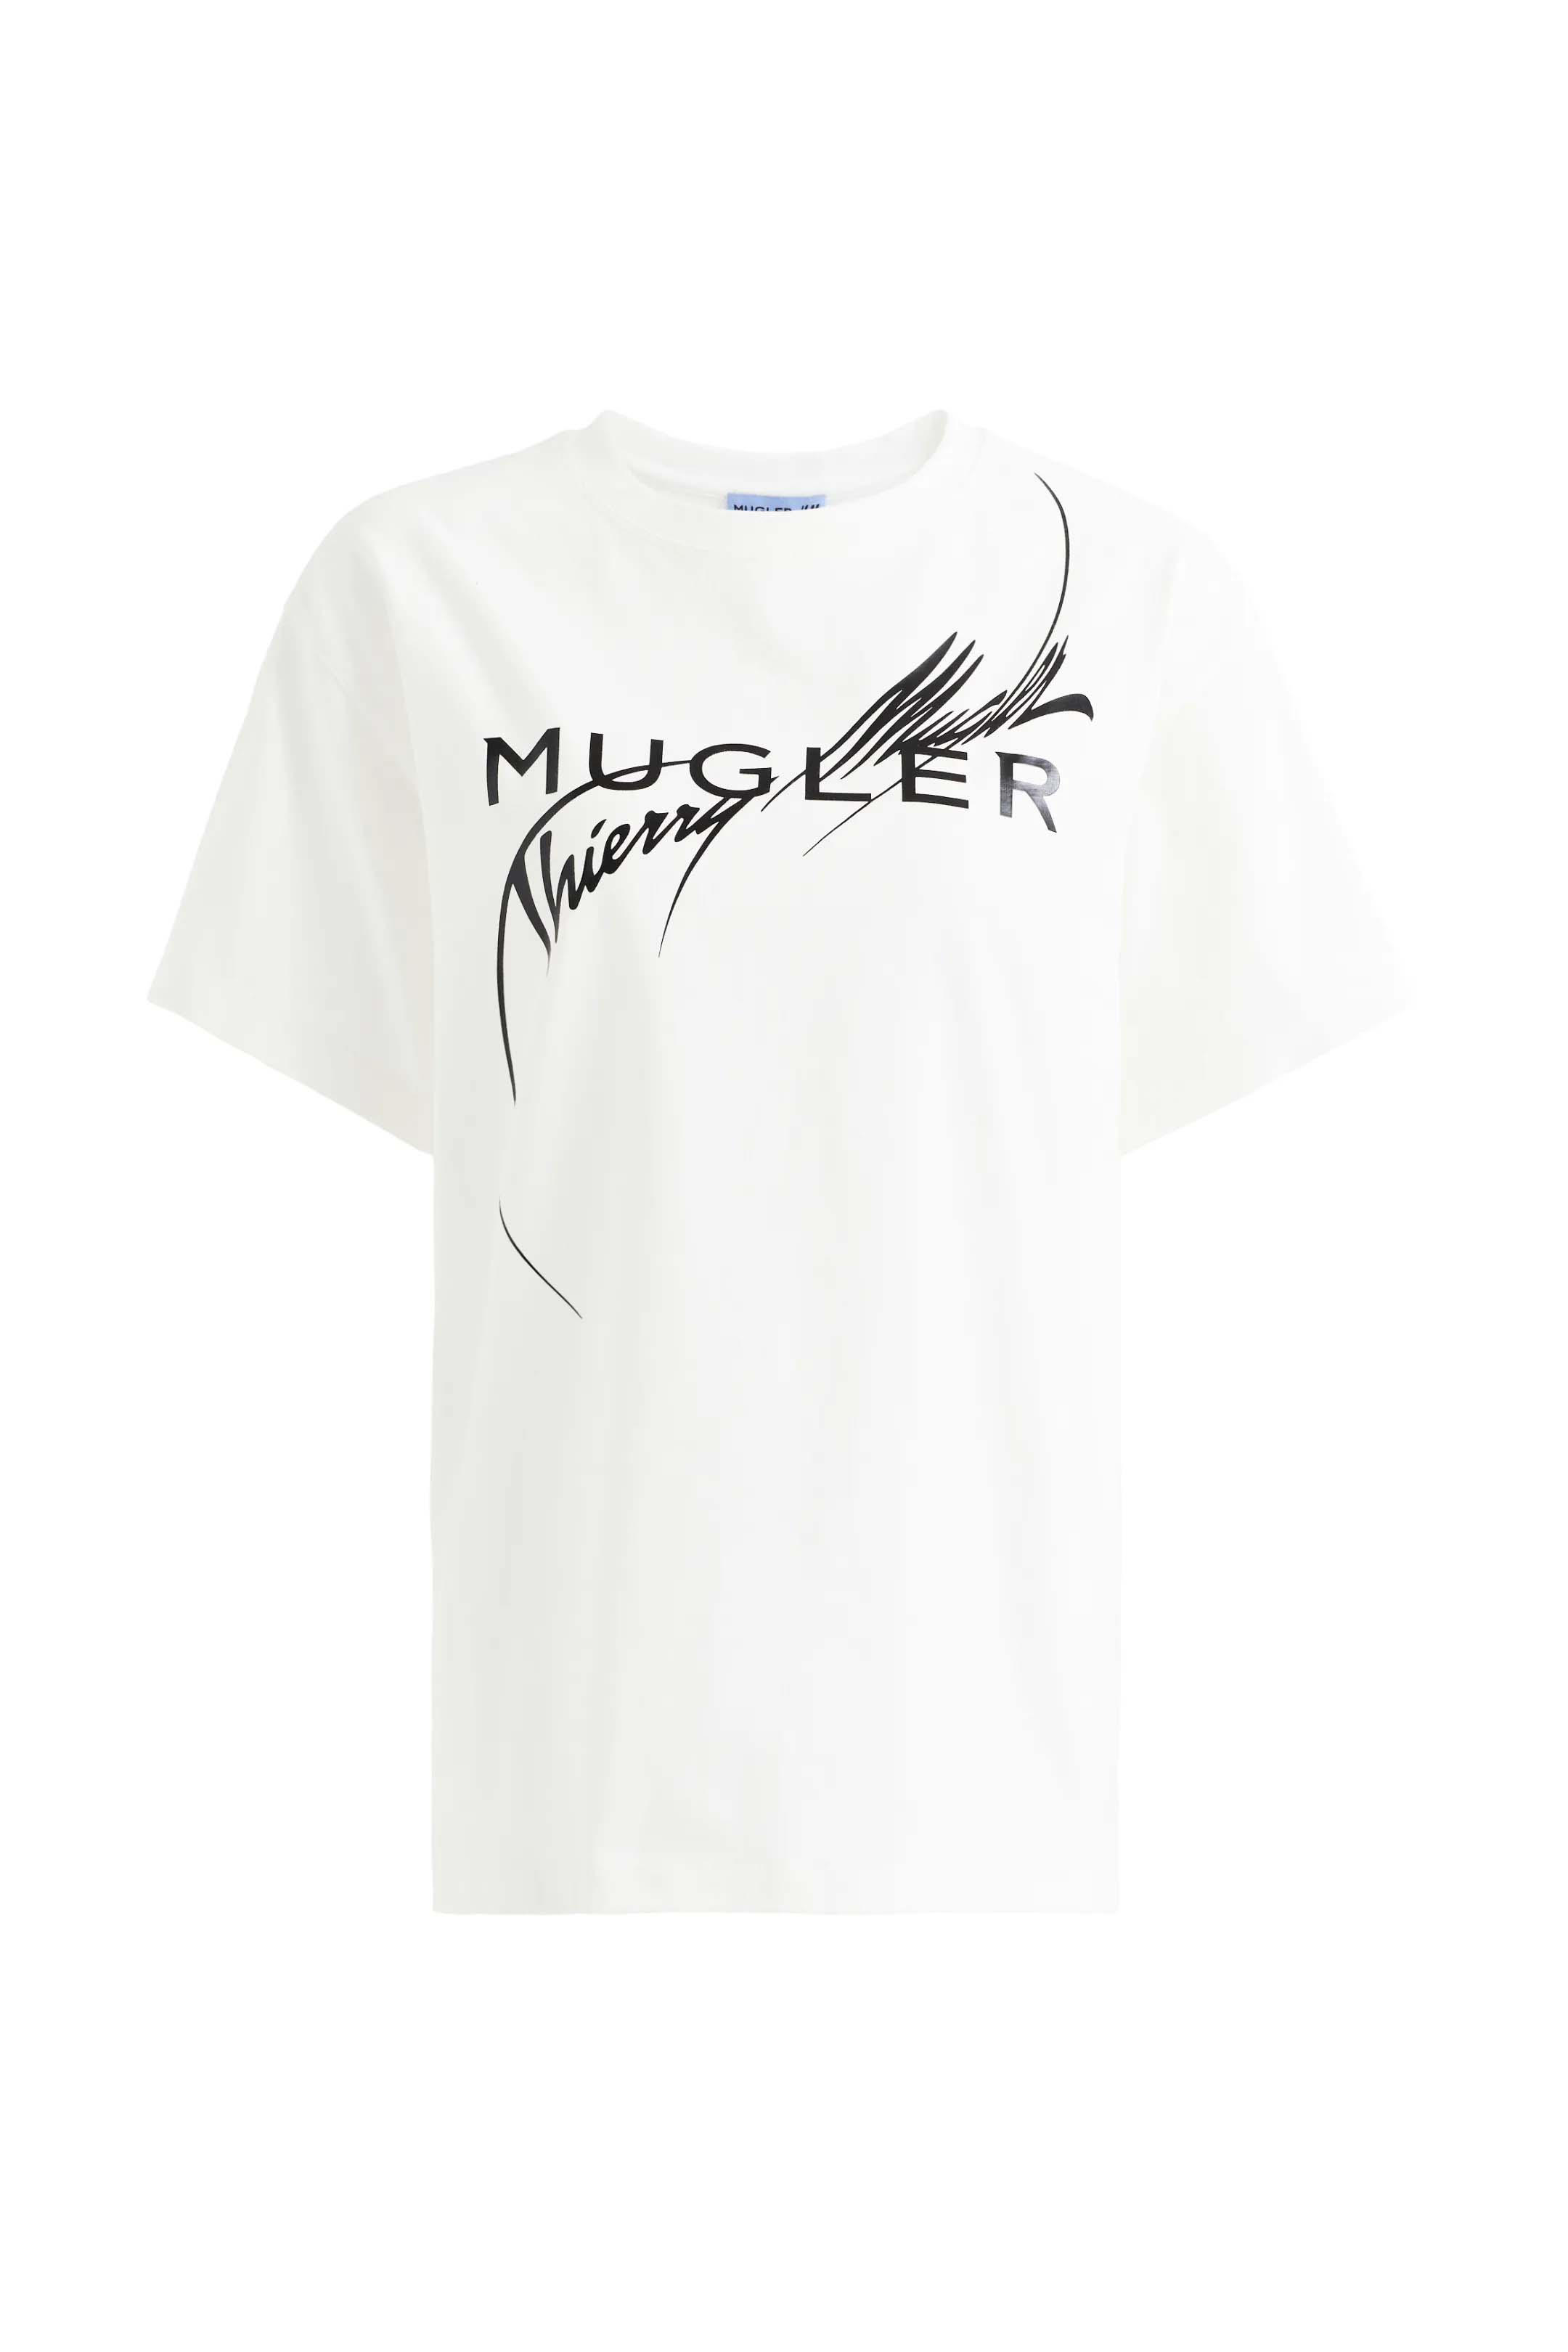 Mugler H&M Printed T-shirt White